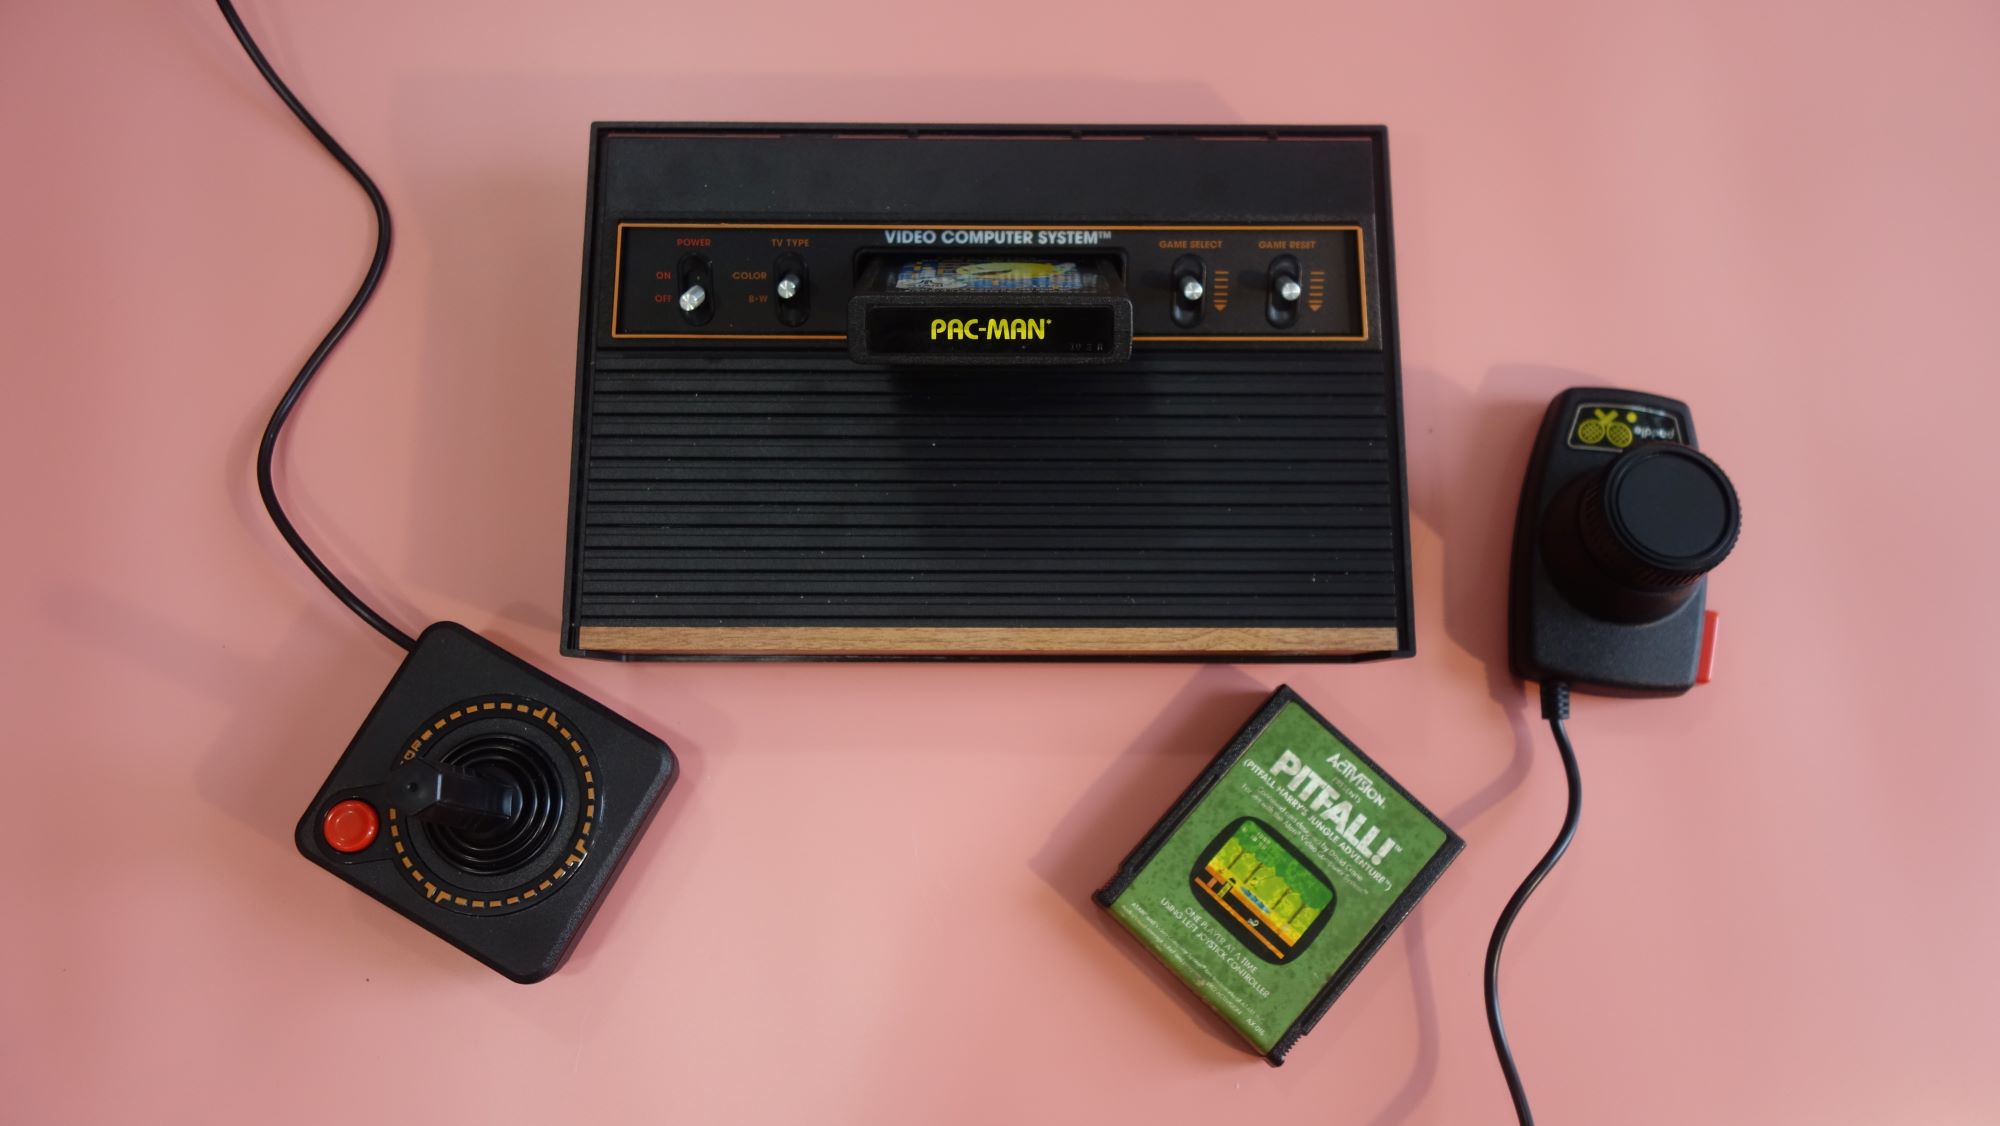 Atari 2600+ review: slots of fun or gaming relic?